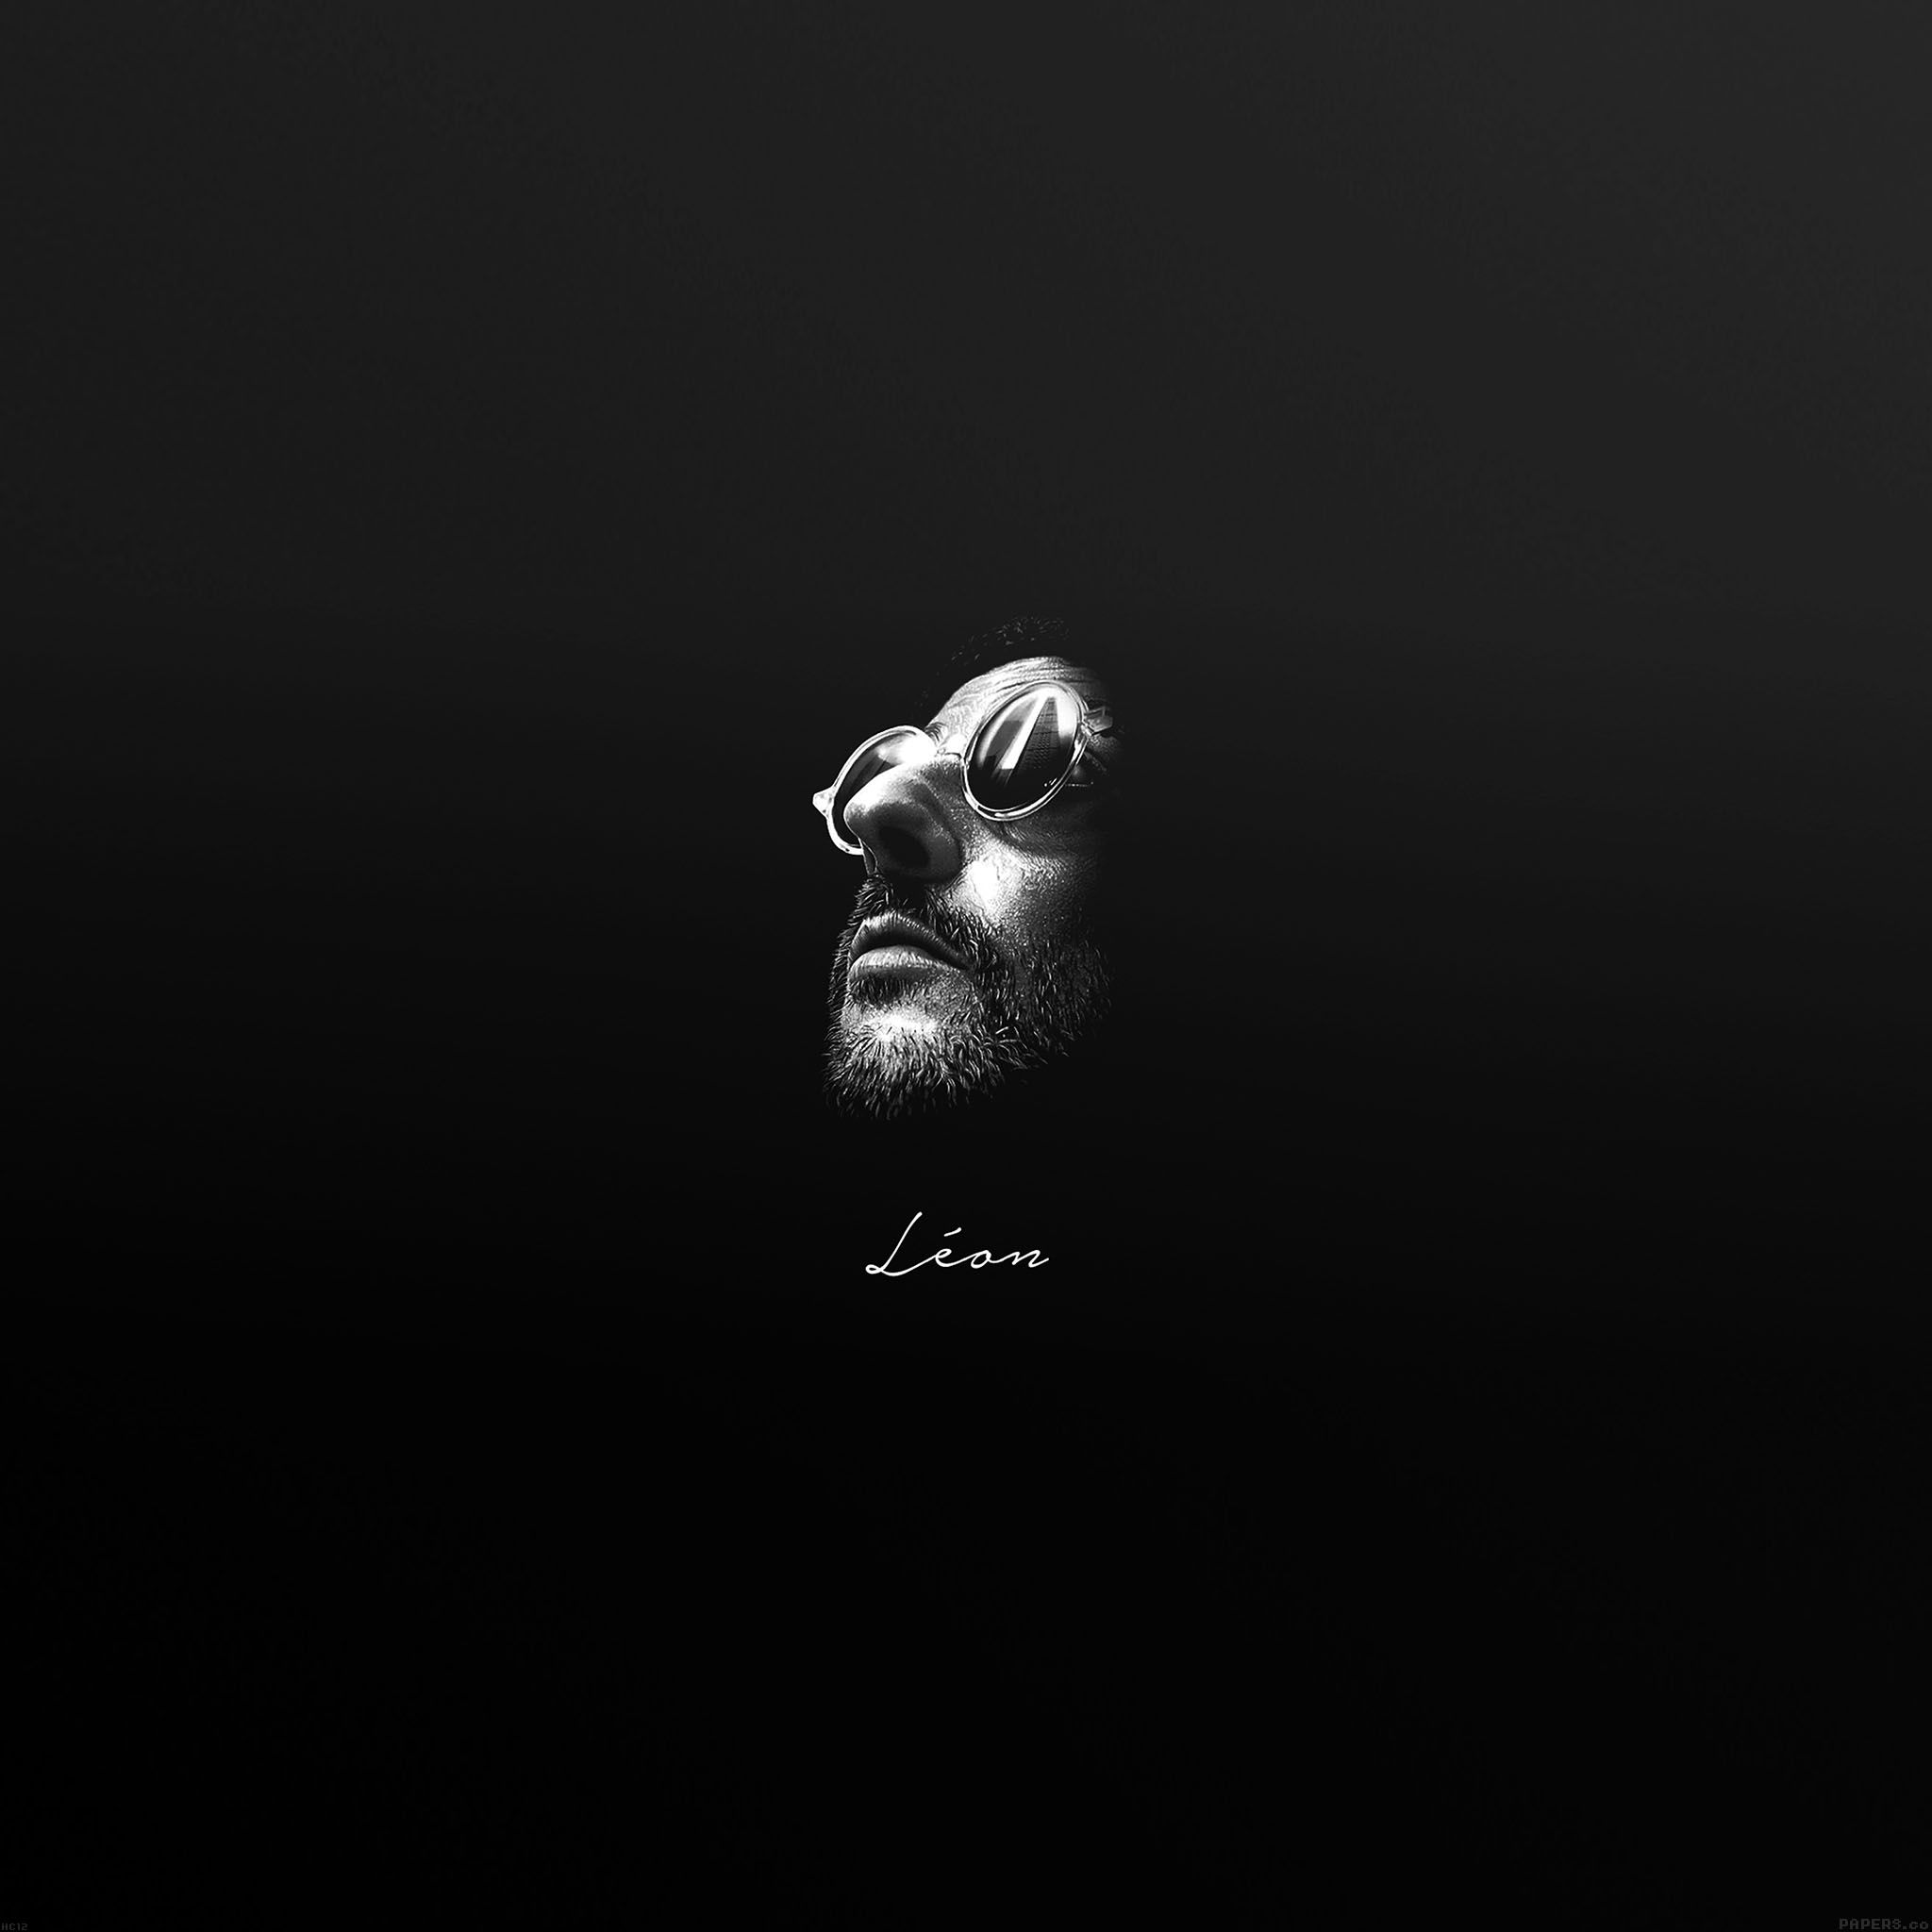 Leon Face Minimal Simple Art